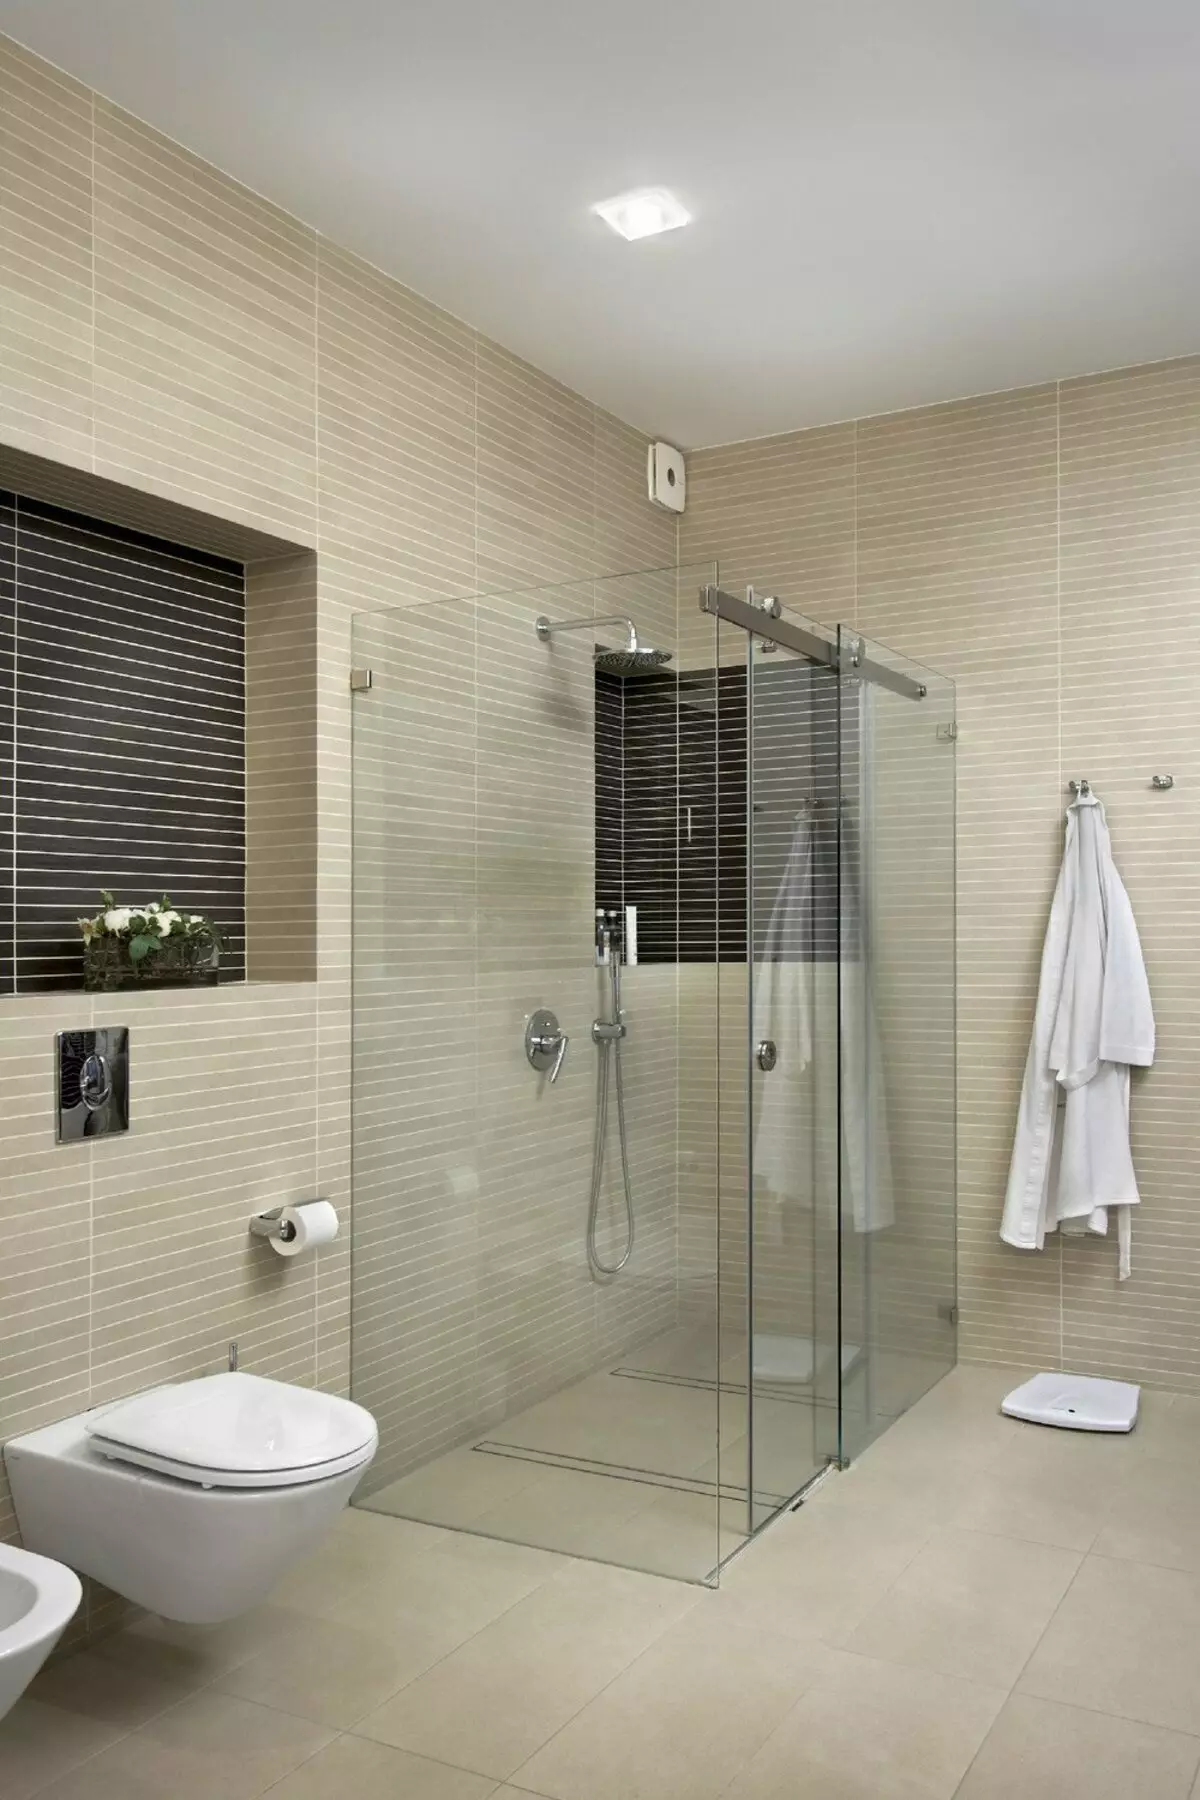 Dušas vonios kambaryje be salono (86 nuotraukos): vonios kambario dizaino parinktys su dušu be padėklų ir plytelių kabinų, projektų 21384_20